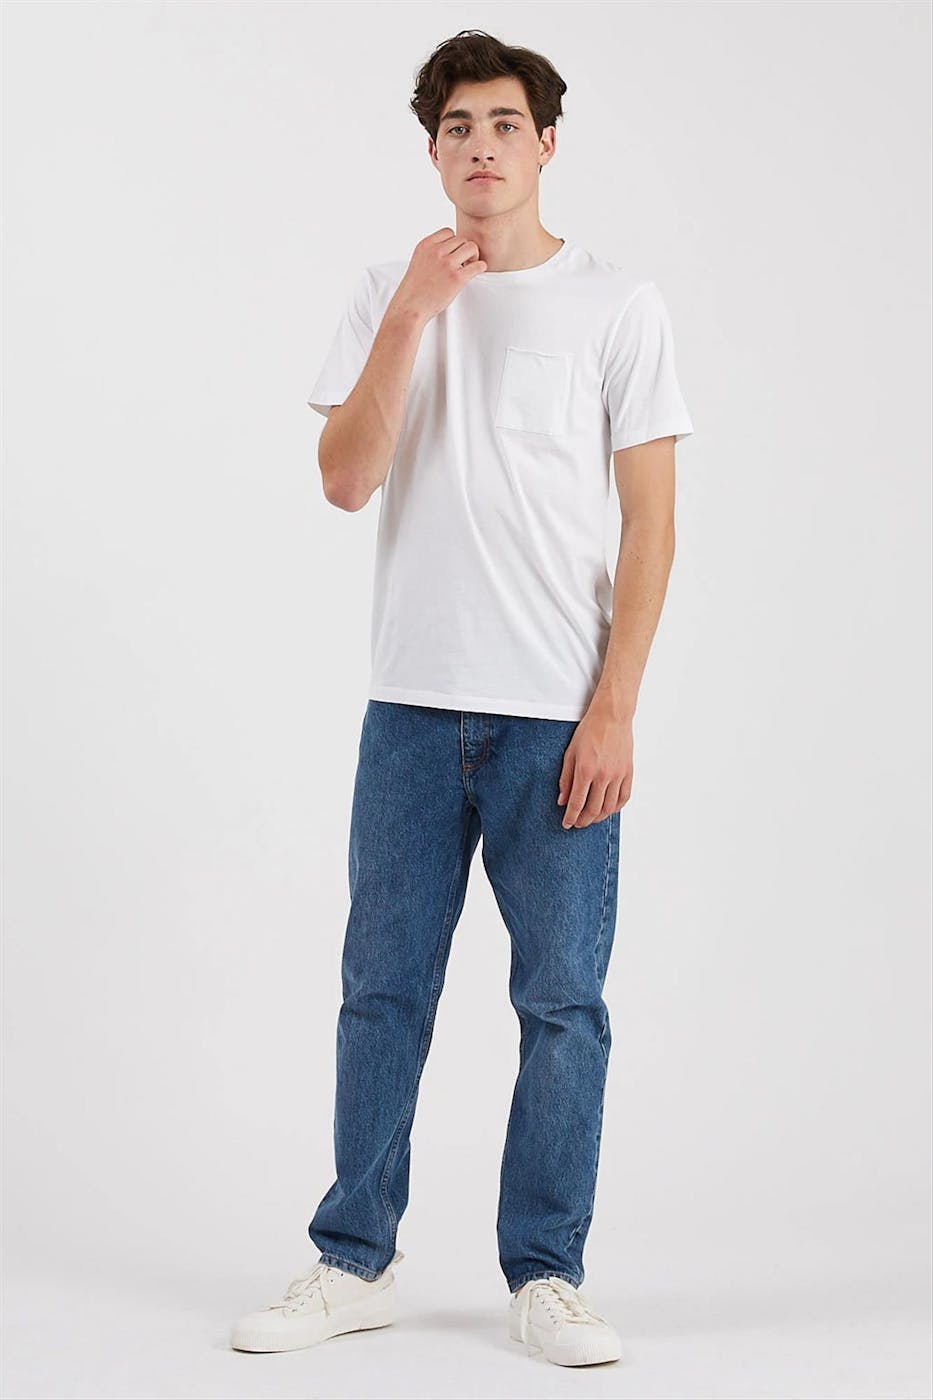 Minimum - Witte Nowa T-shirt